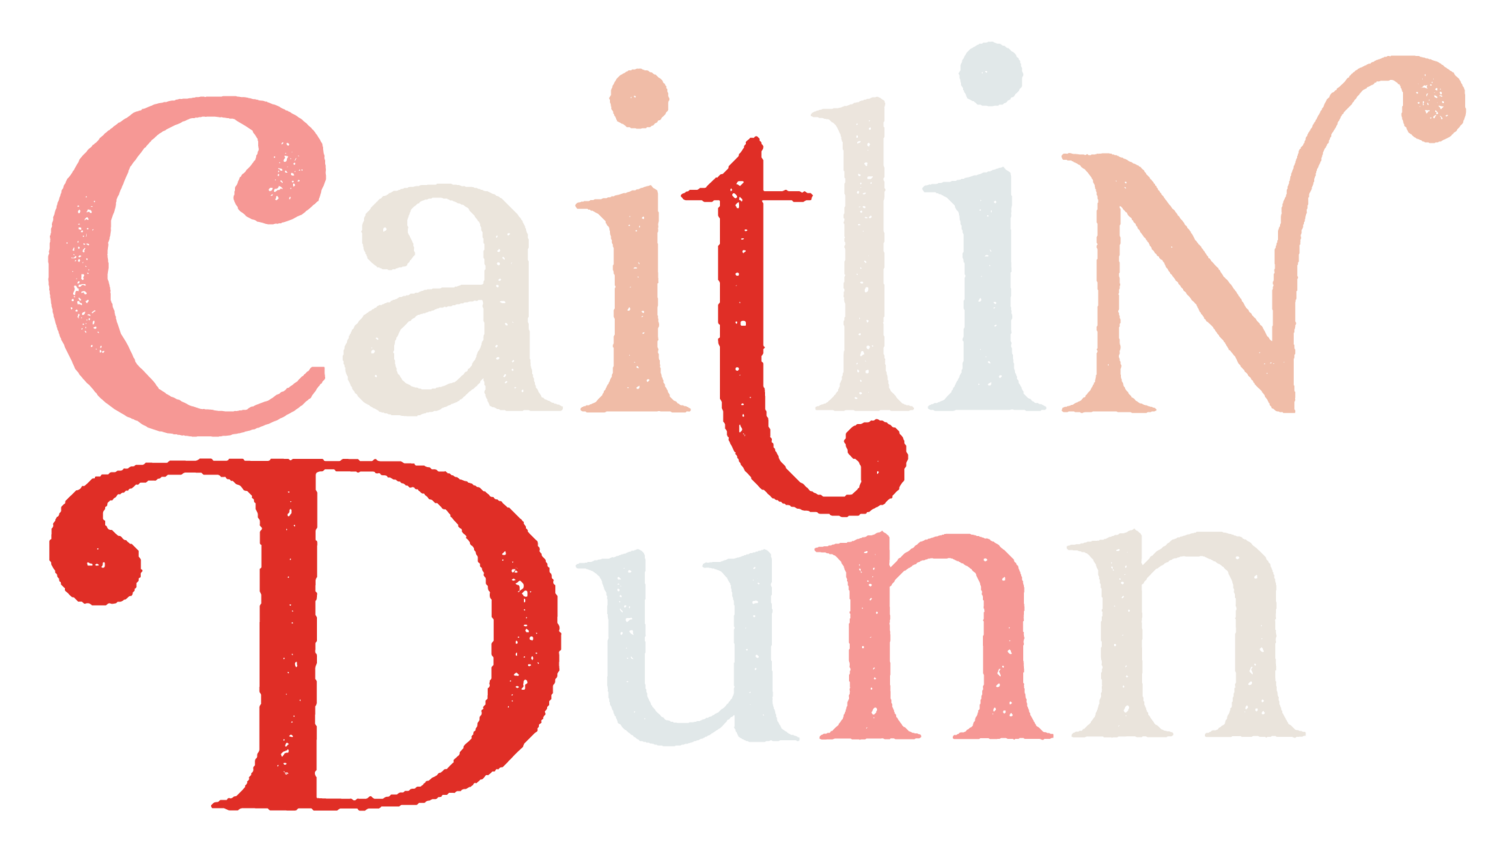 CAITLIN DUNN (Copy)